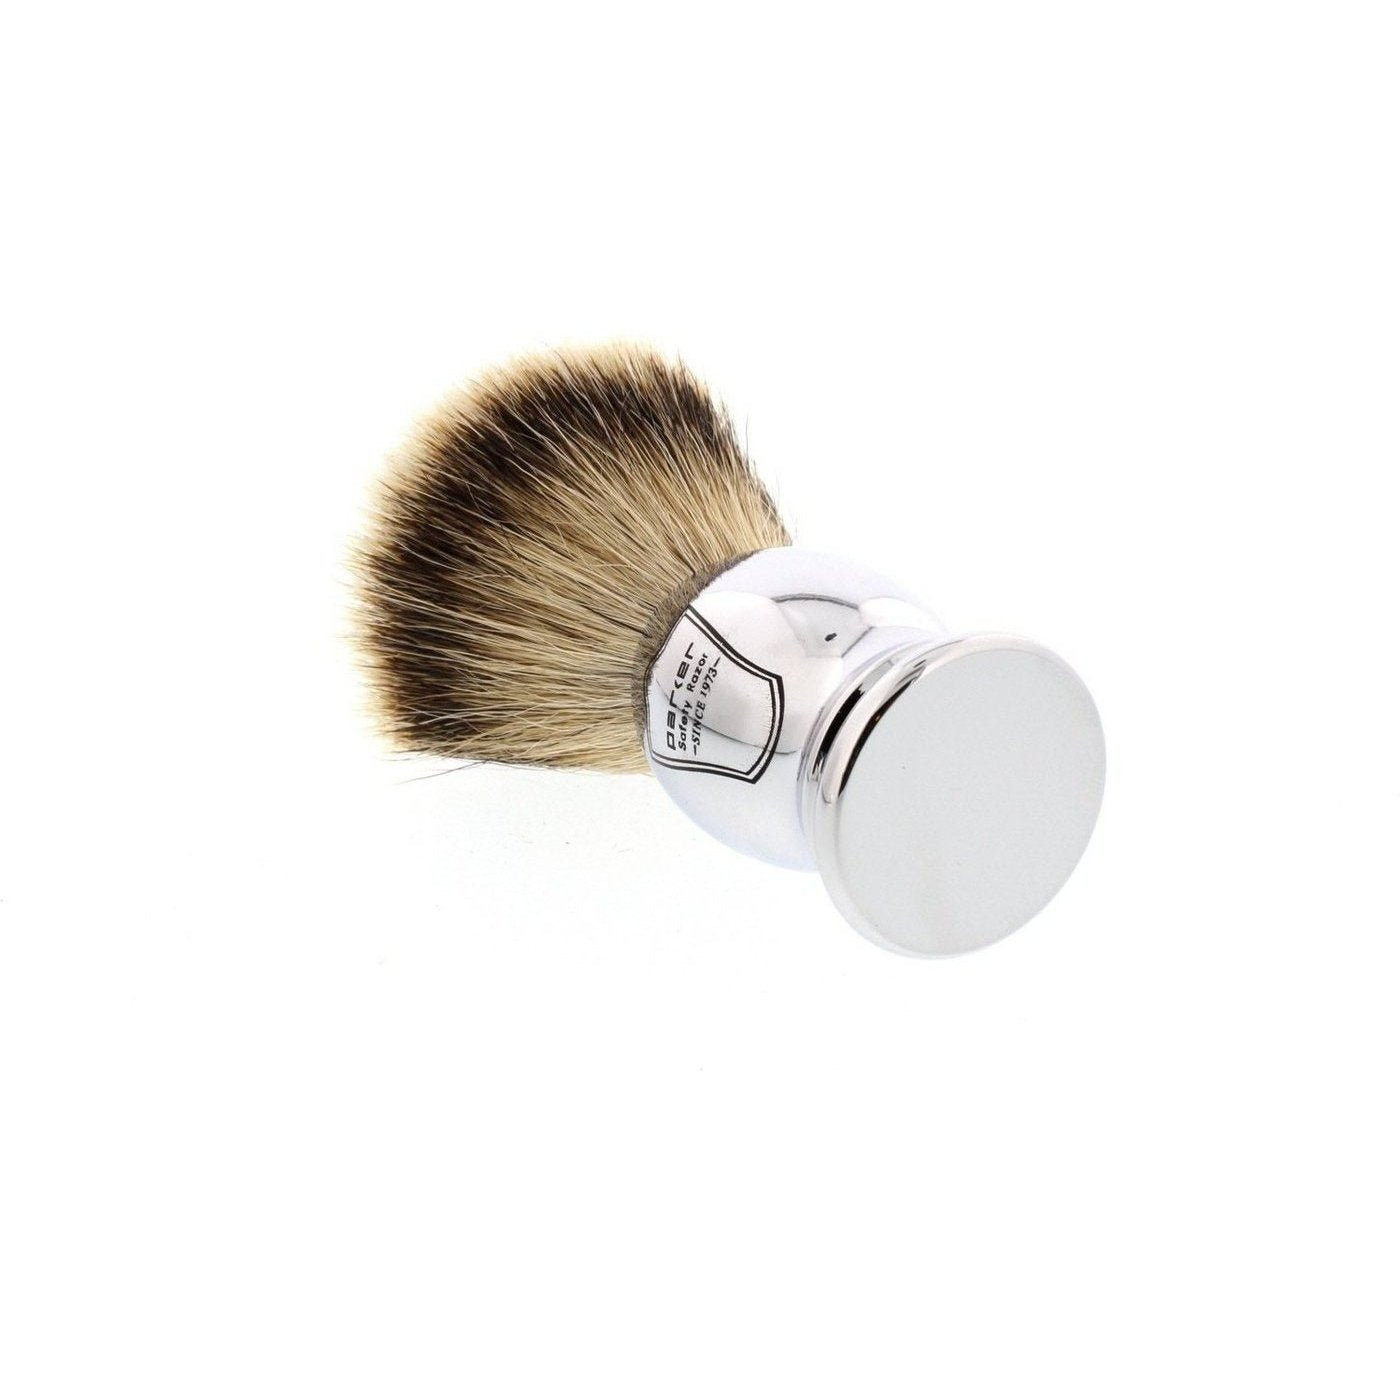 Product image 3 for Parker CHST Silvertip Badger Shaving Brush, Chrome Handle